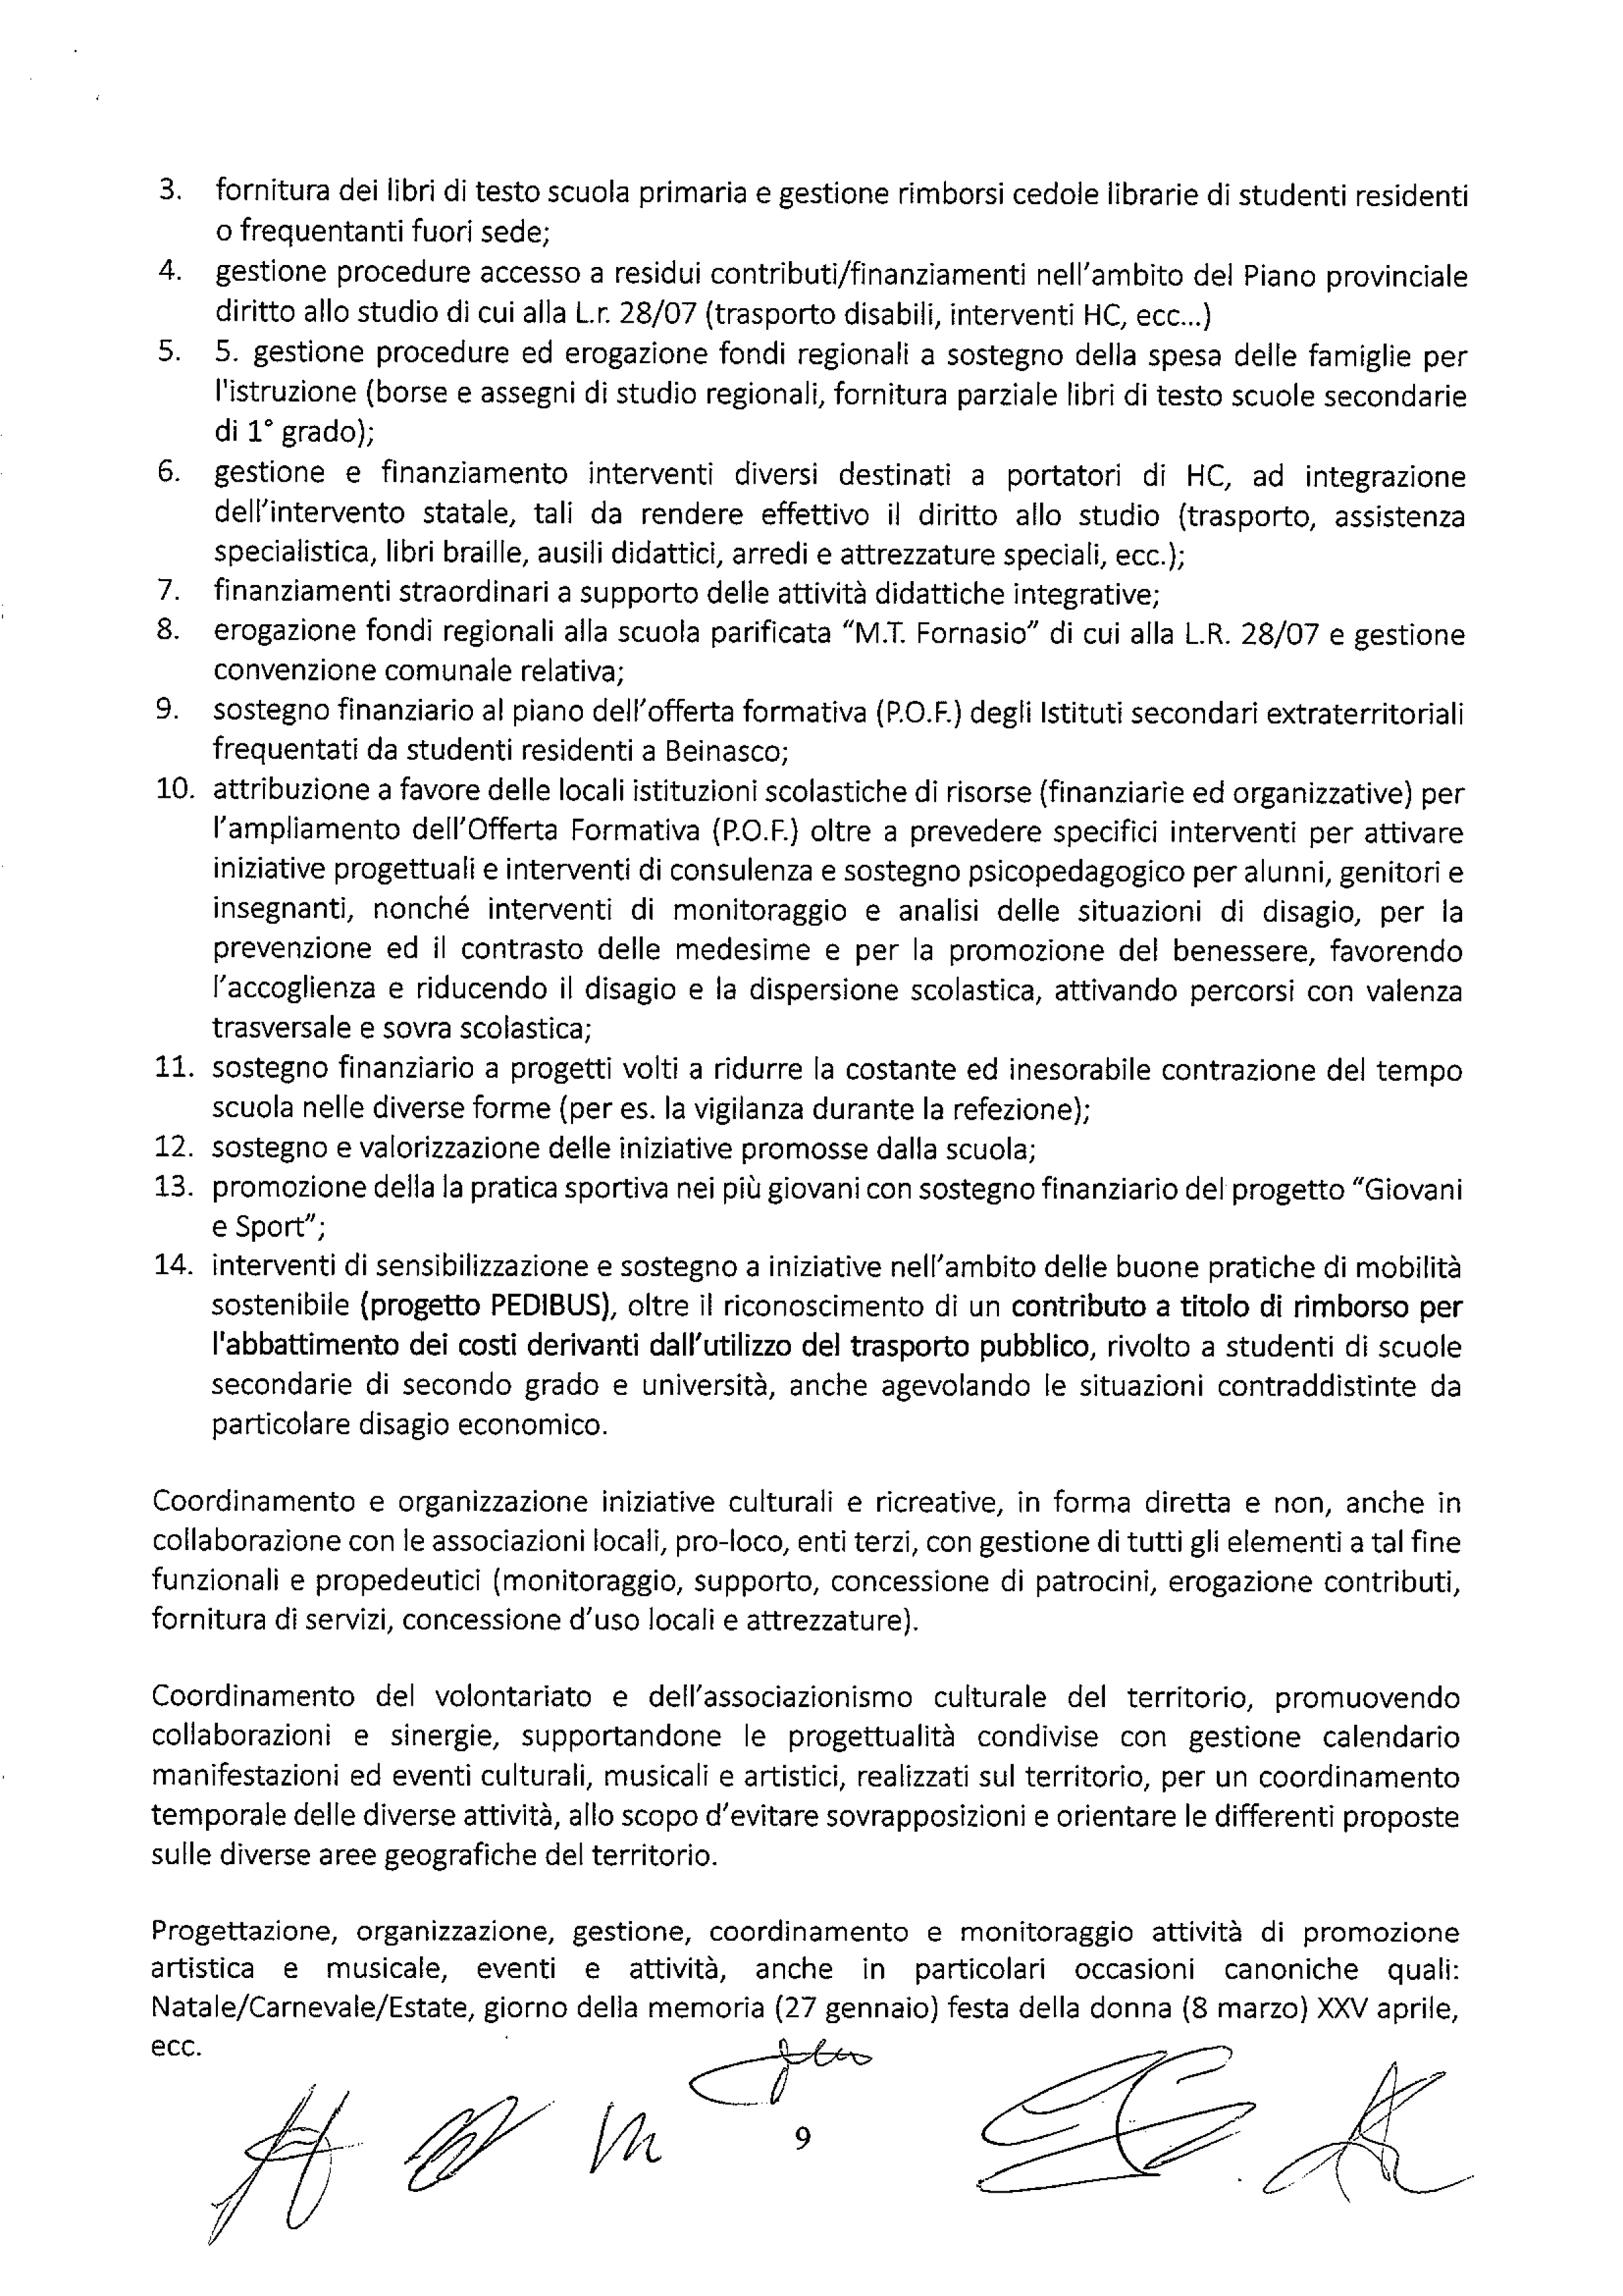 Accordo Beinasco 2019-9